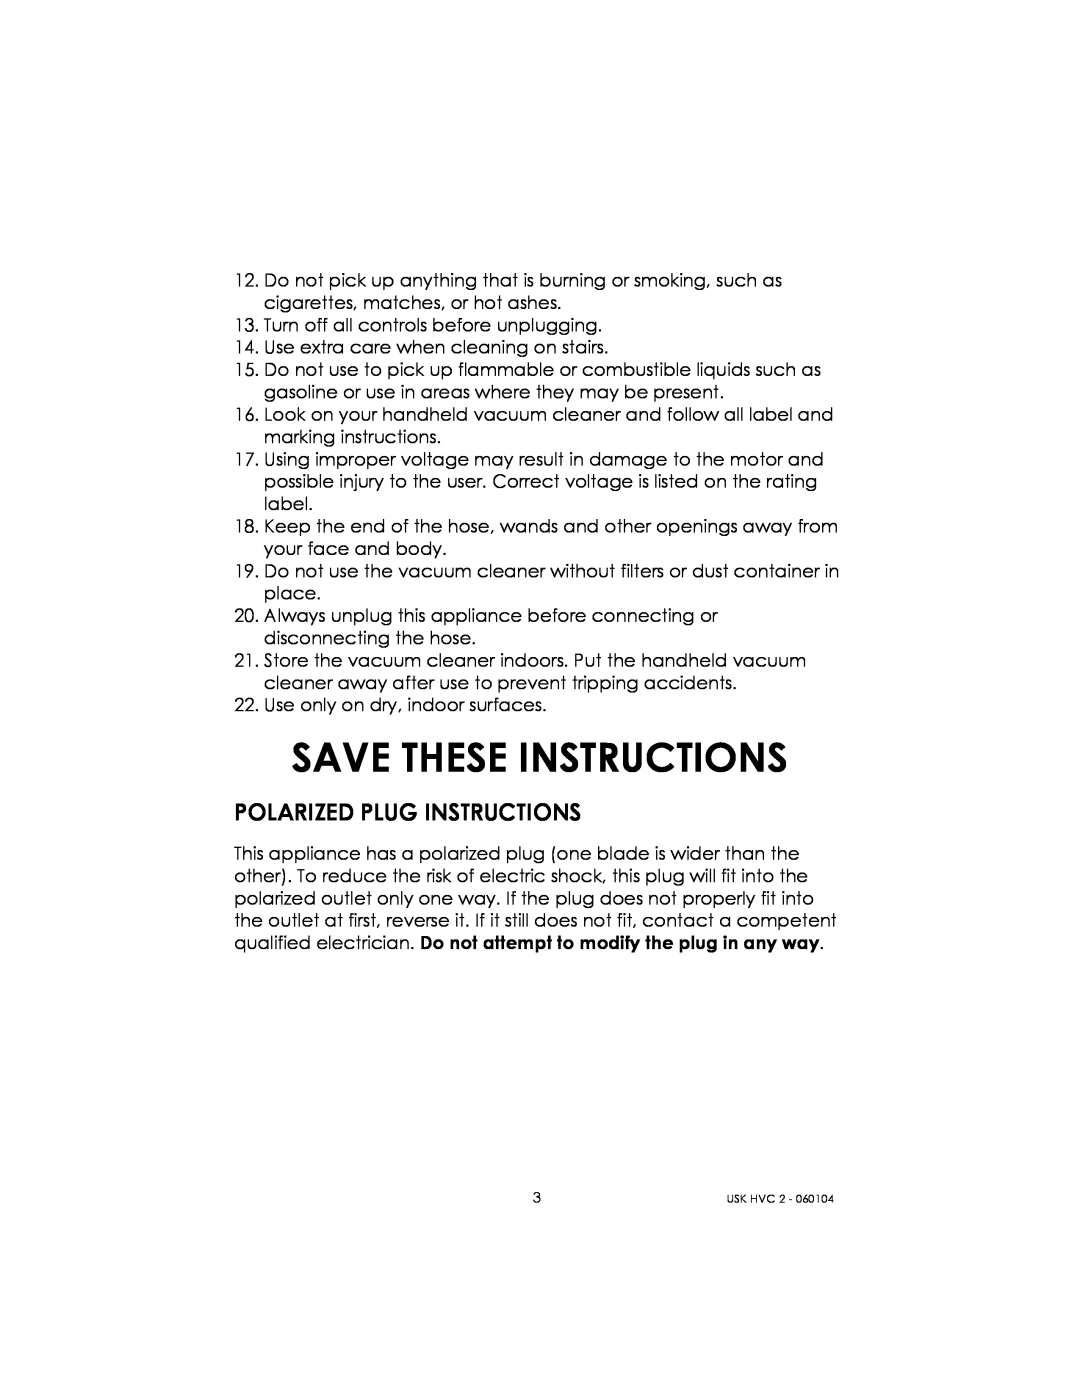 Kalorik USK HVC 2 manual Save These Instructions, Polarized Plug Instructions 